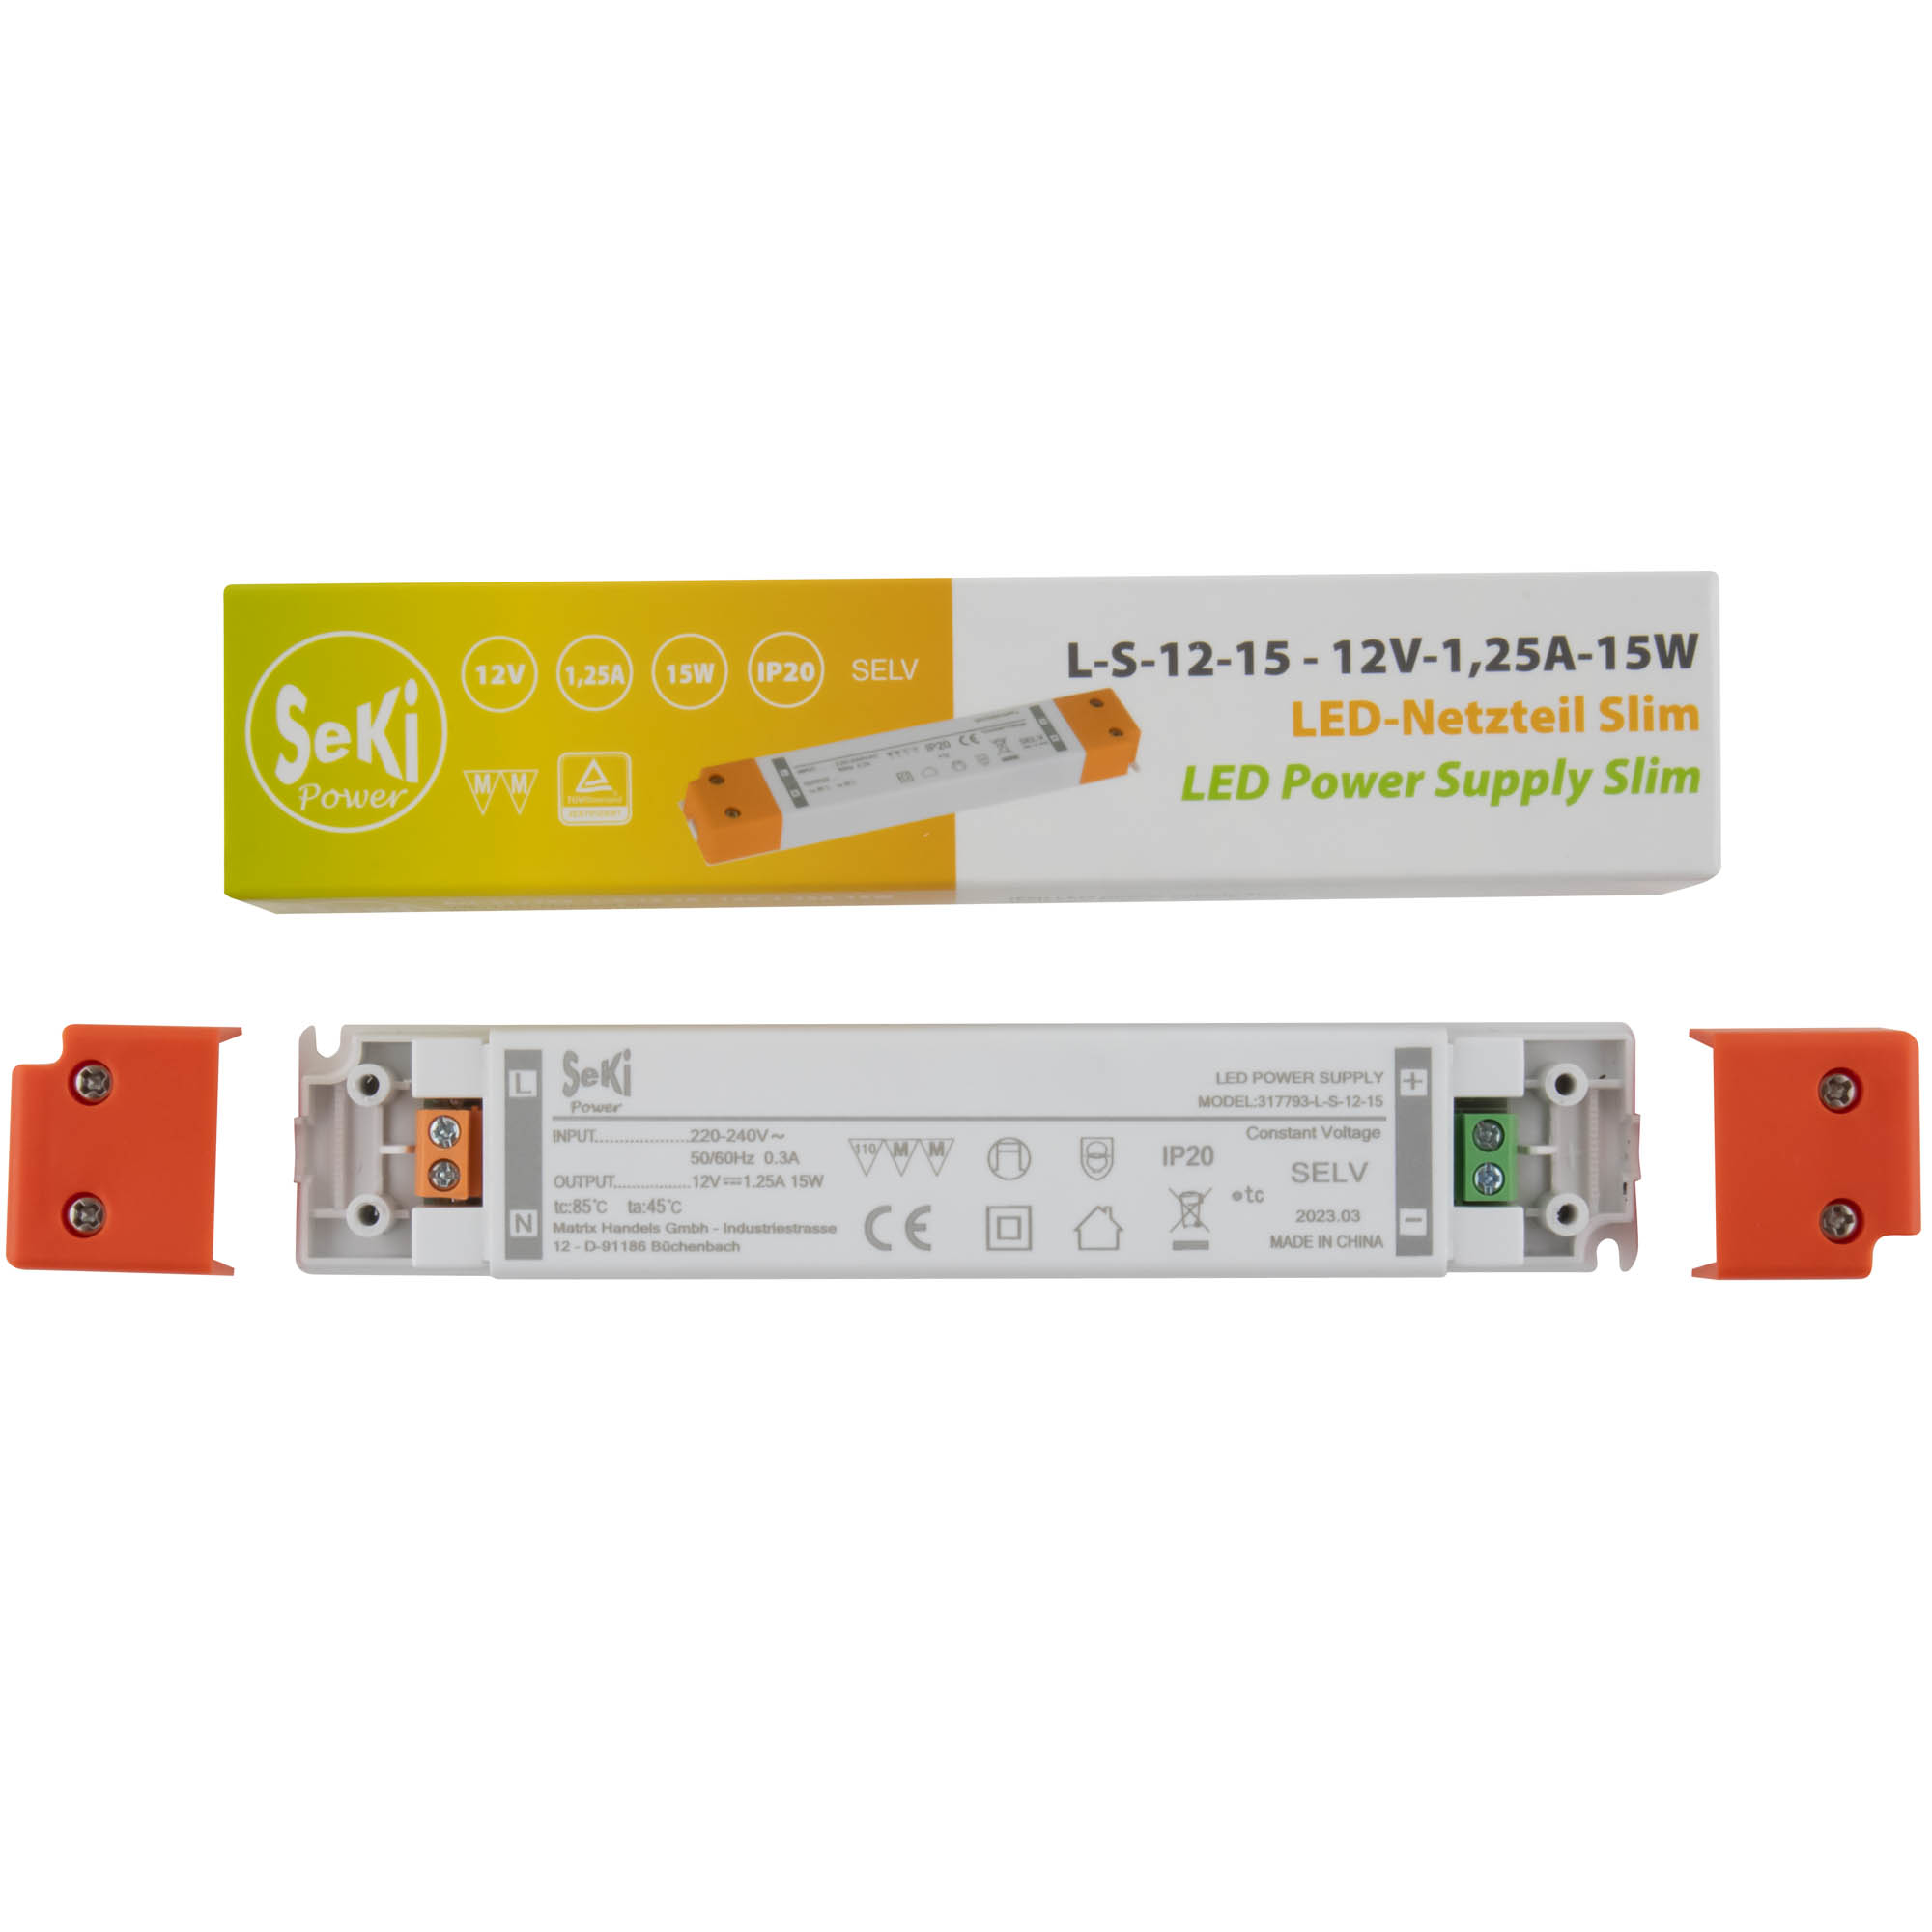 LED-Netzteil Slim L-S-12-15 - 12V - 1,25A - 15W